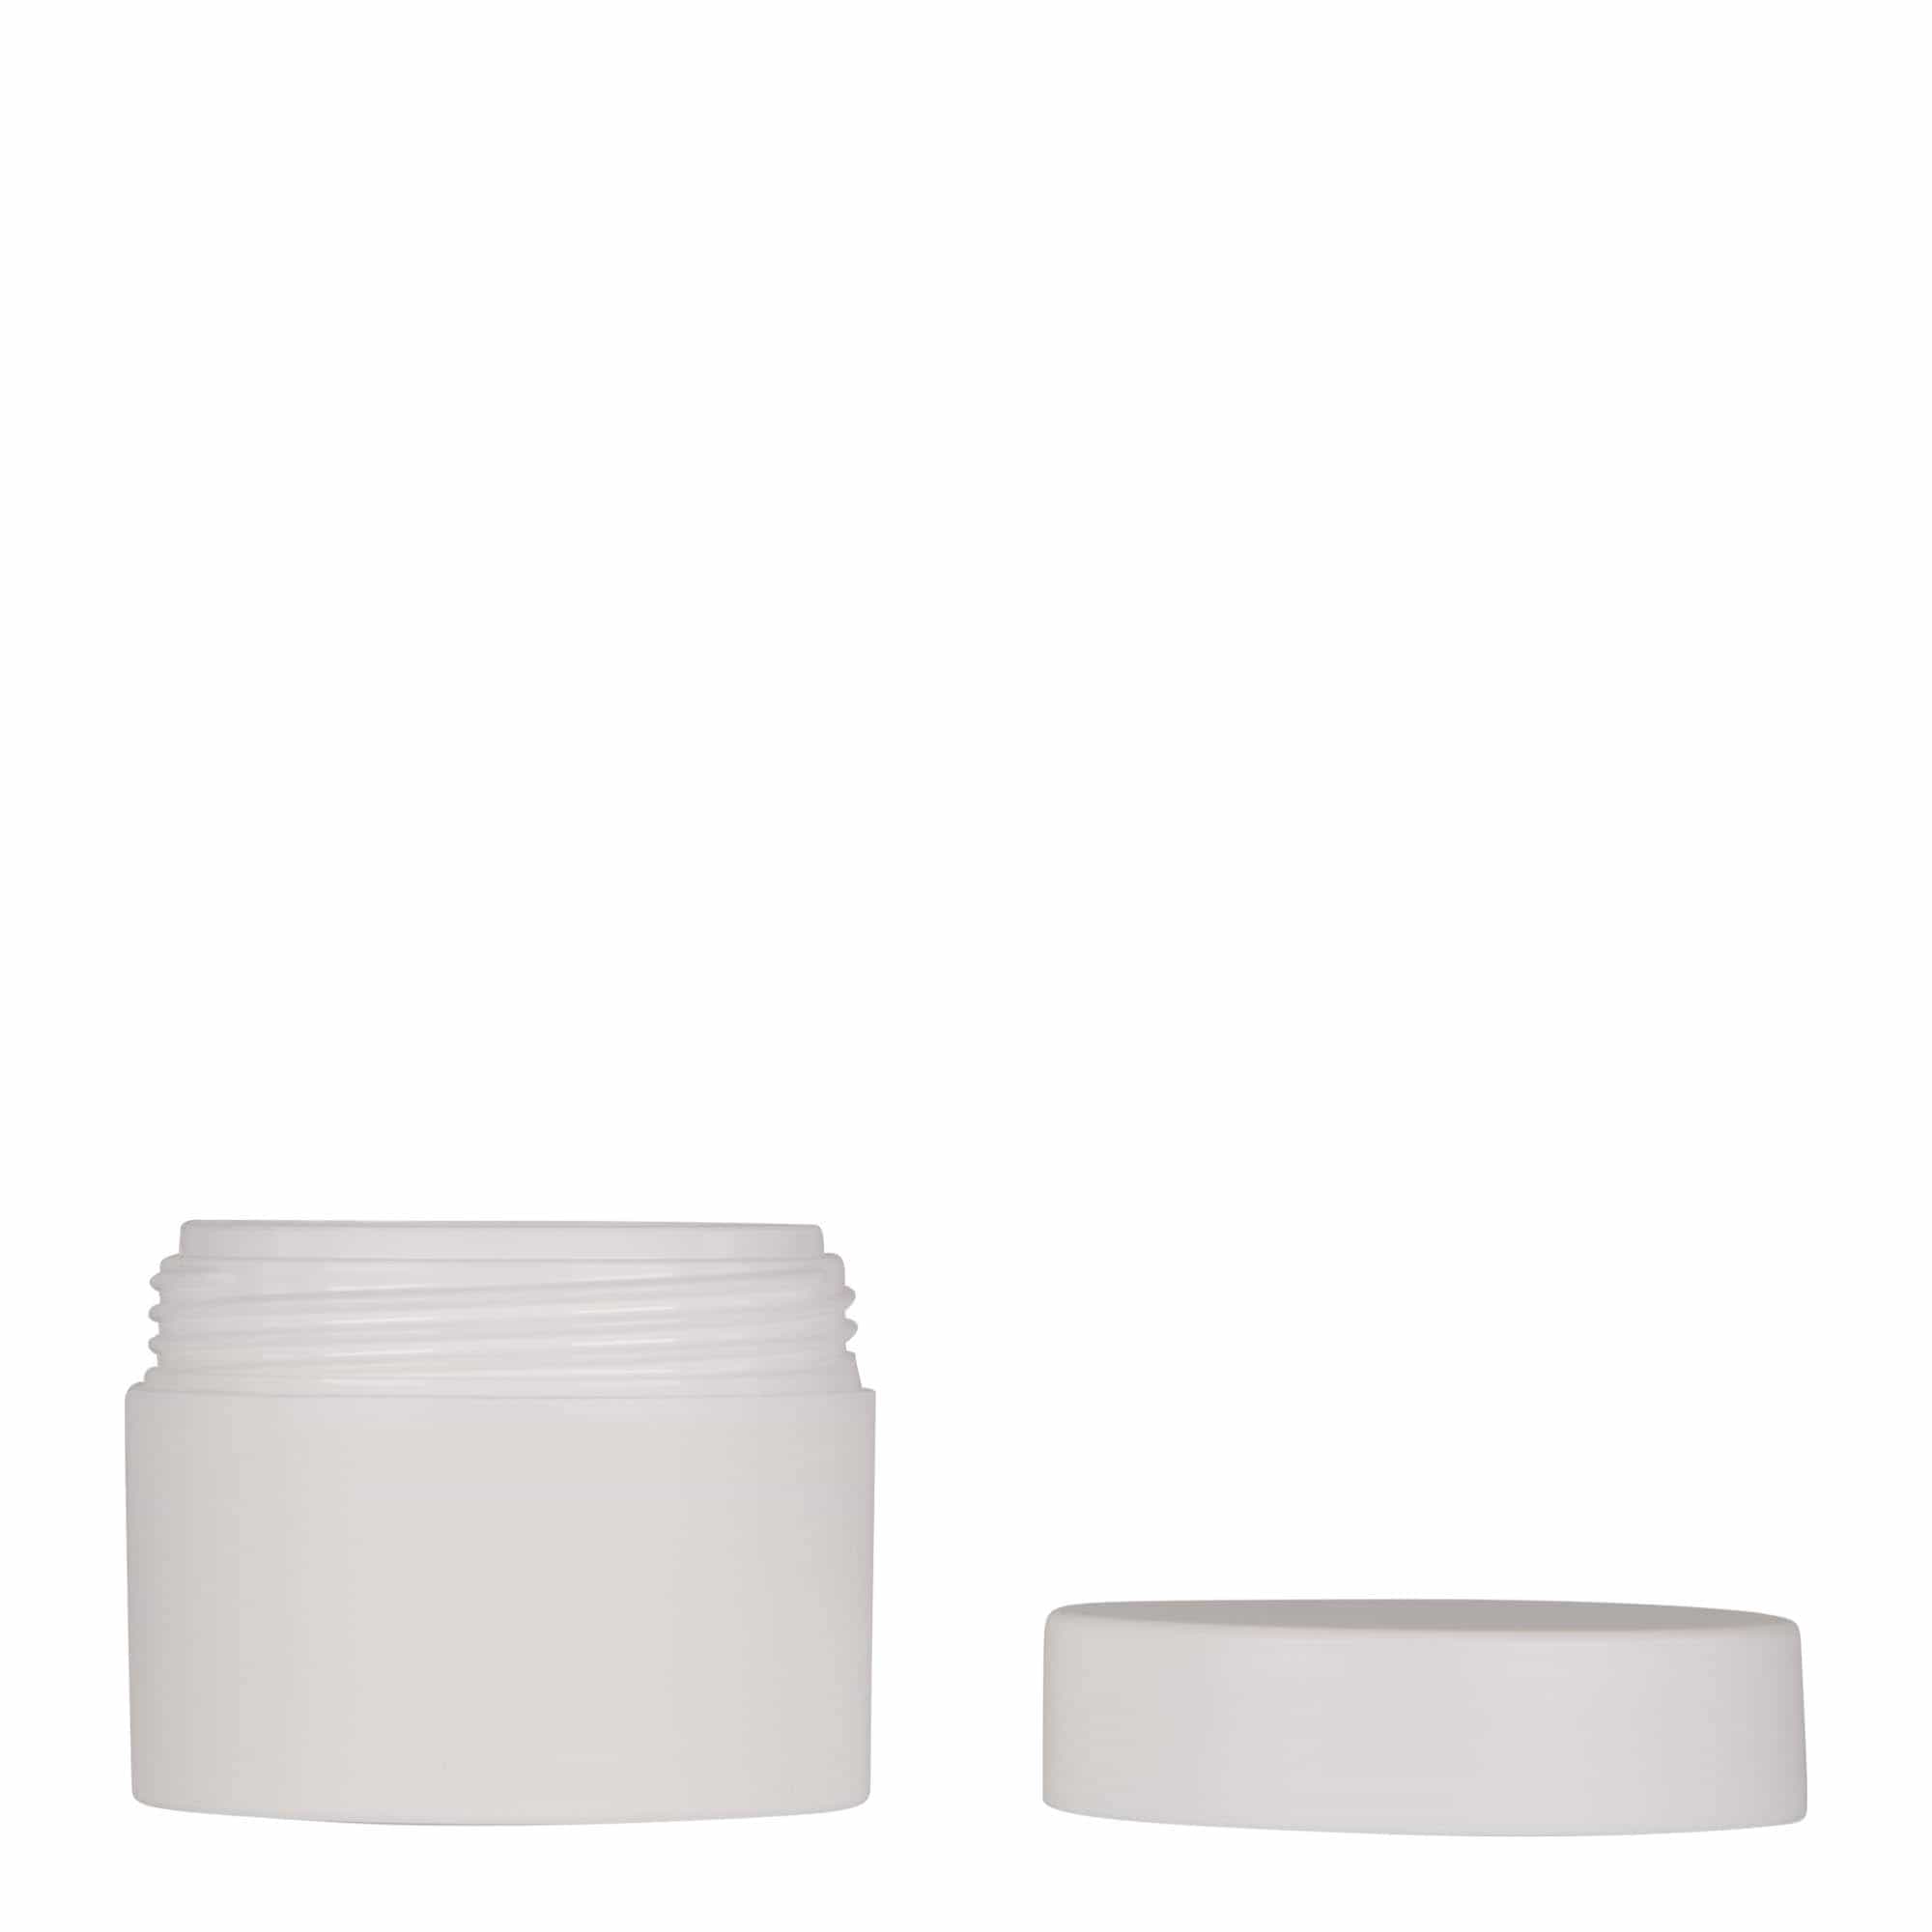 50 ml plastic jar 'Antonella', PP, white, closure: screw cap